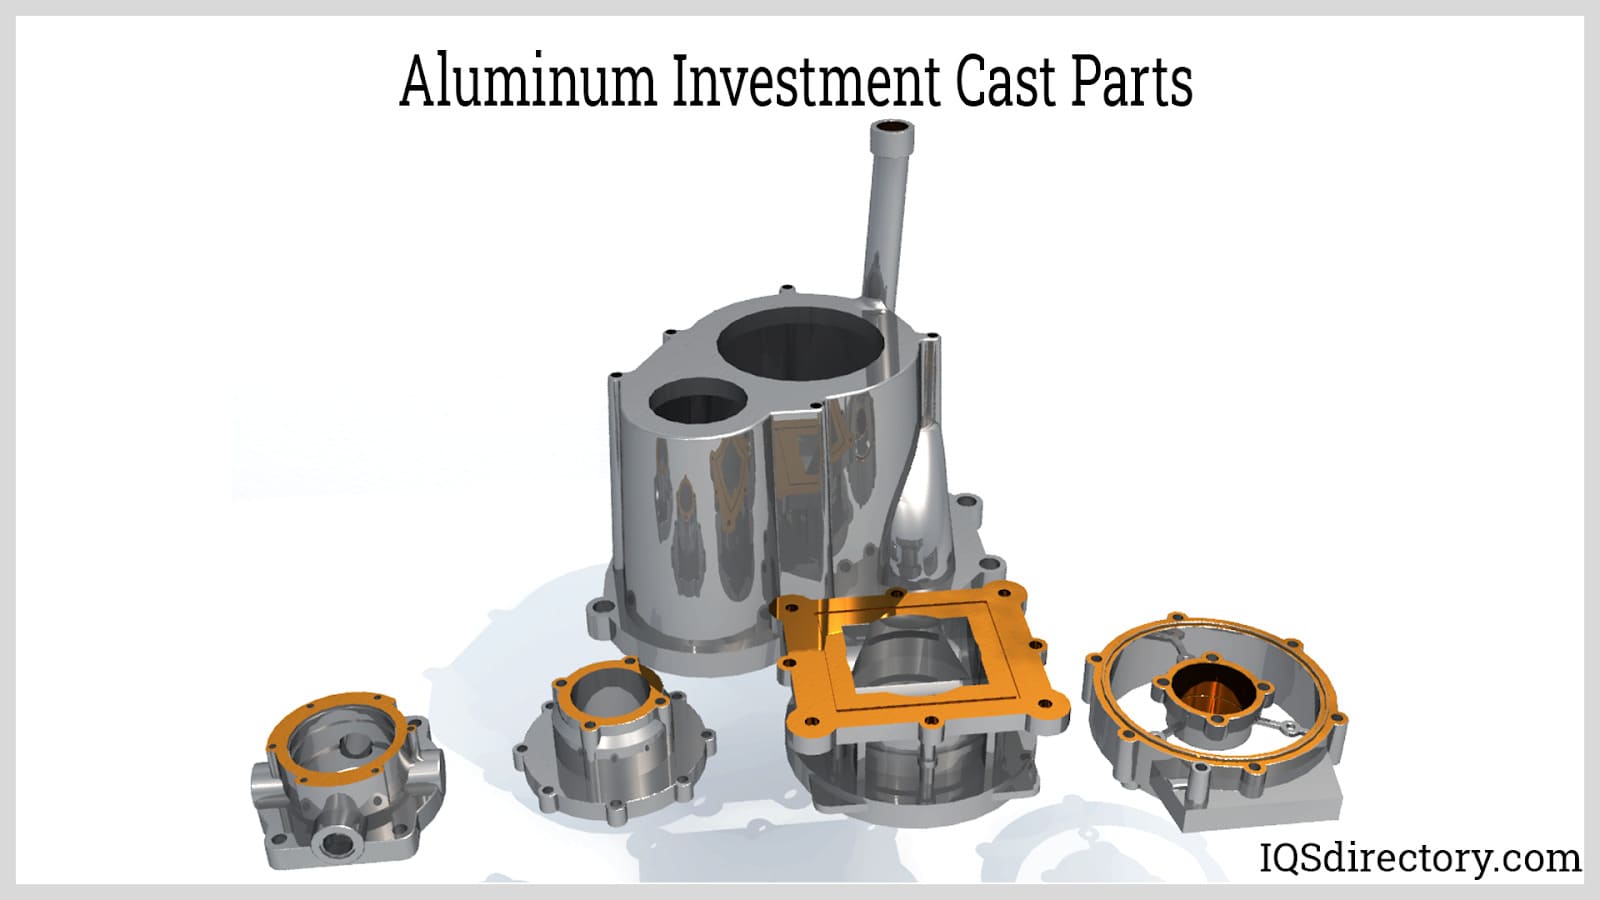 Aluminum Investment Cast Parts